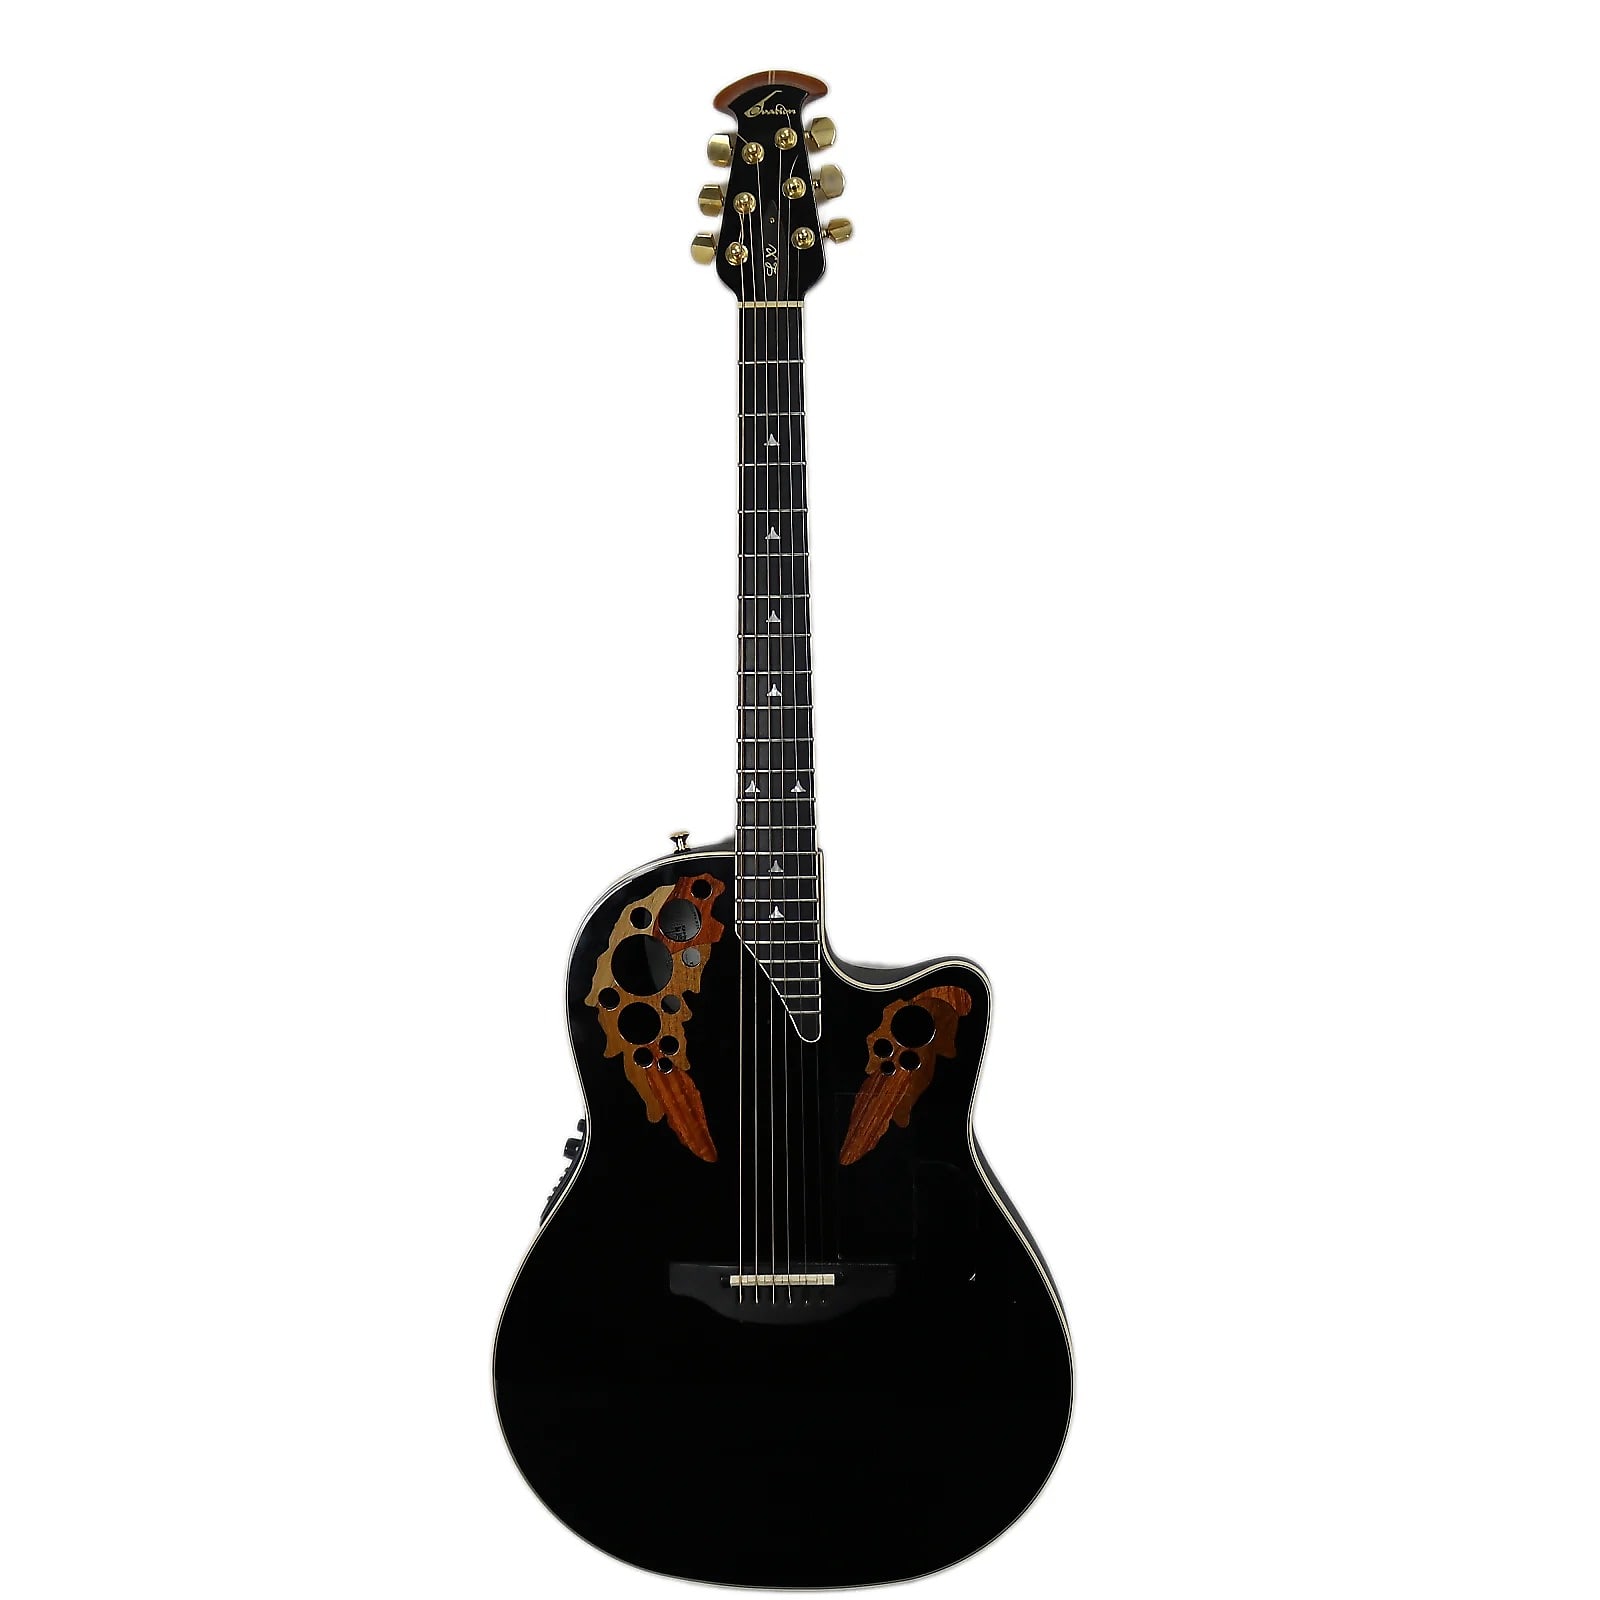 Ovation USA】オベーションELITE 1778Tギター - アコースティックギター